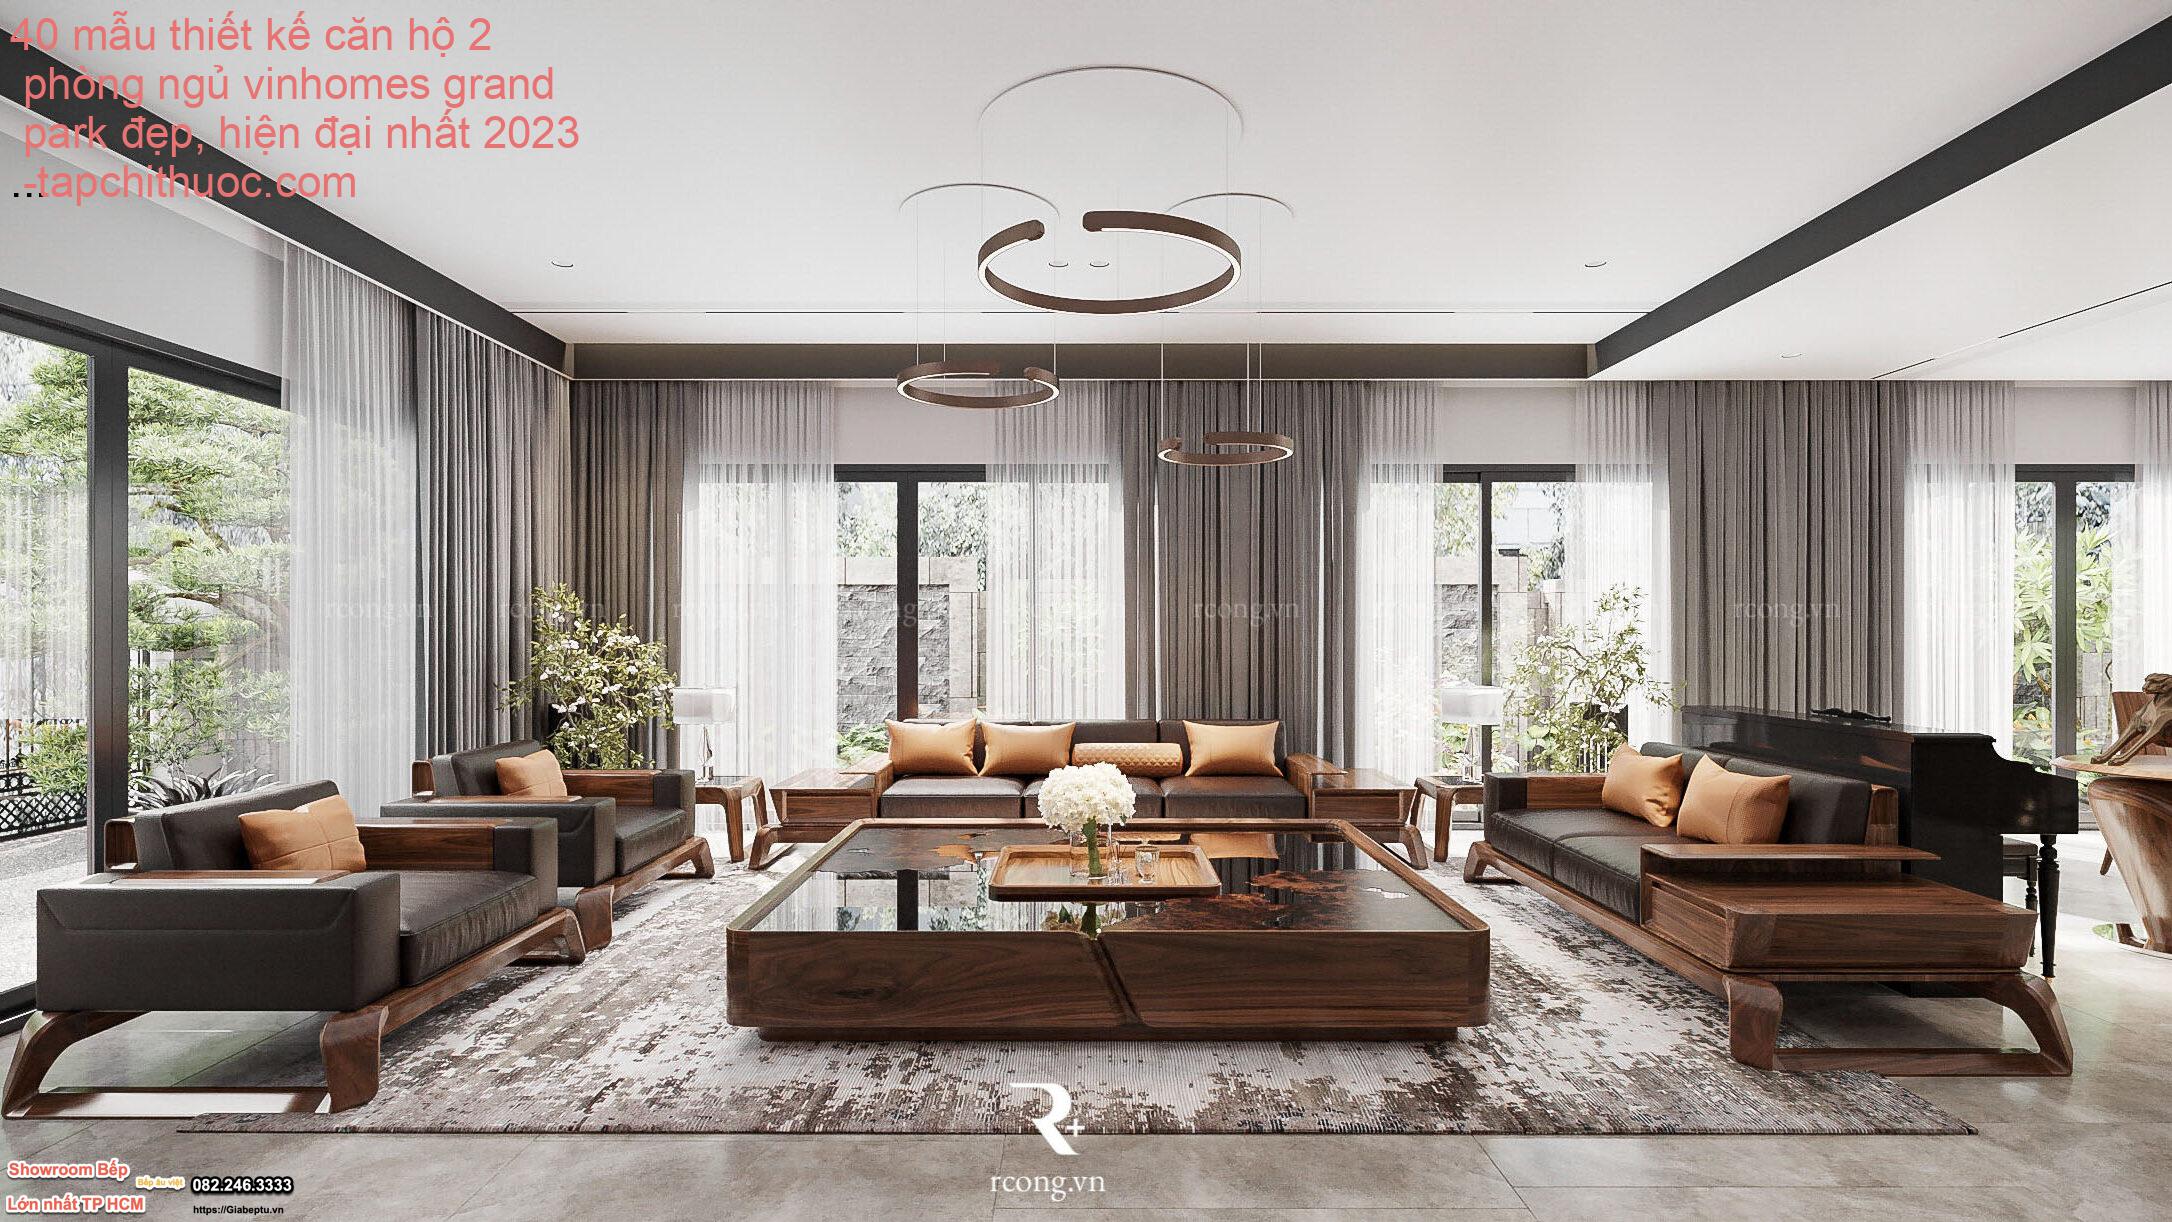 40 mẫu thiết kế căn hộ 2 phòng ngủ vinhomes grand park đẹp, hiện đại nhất 2023